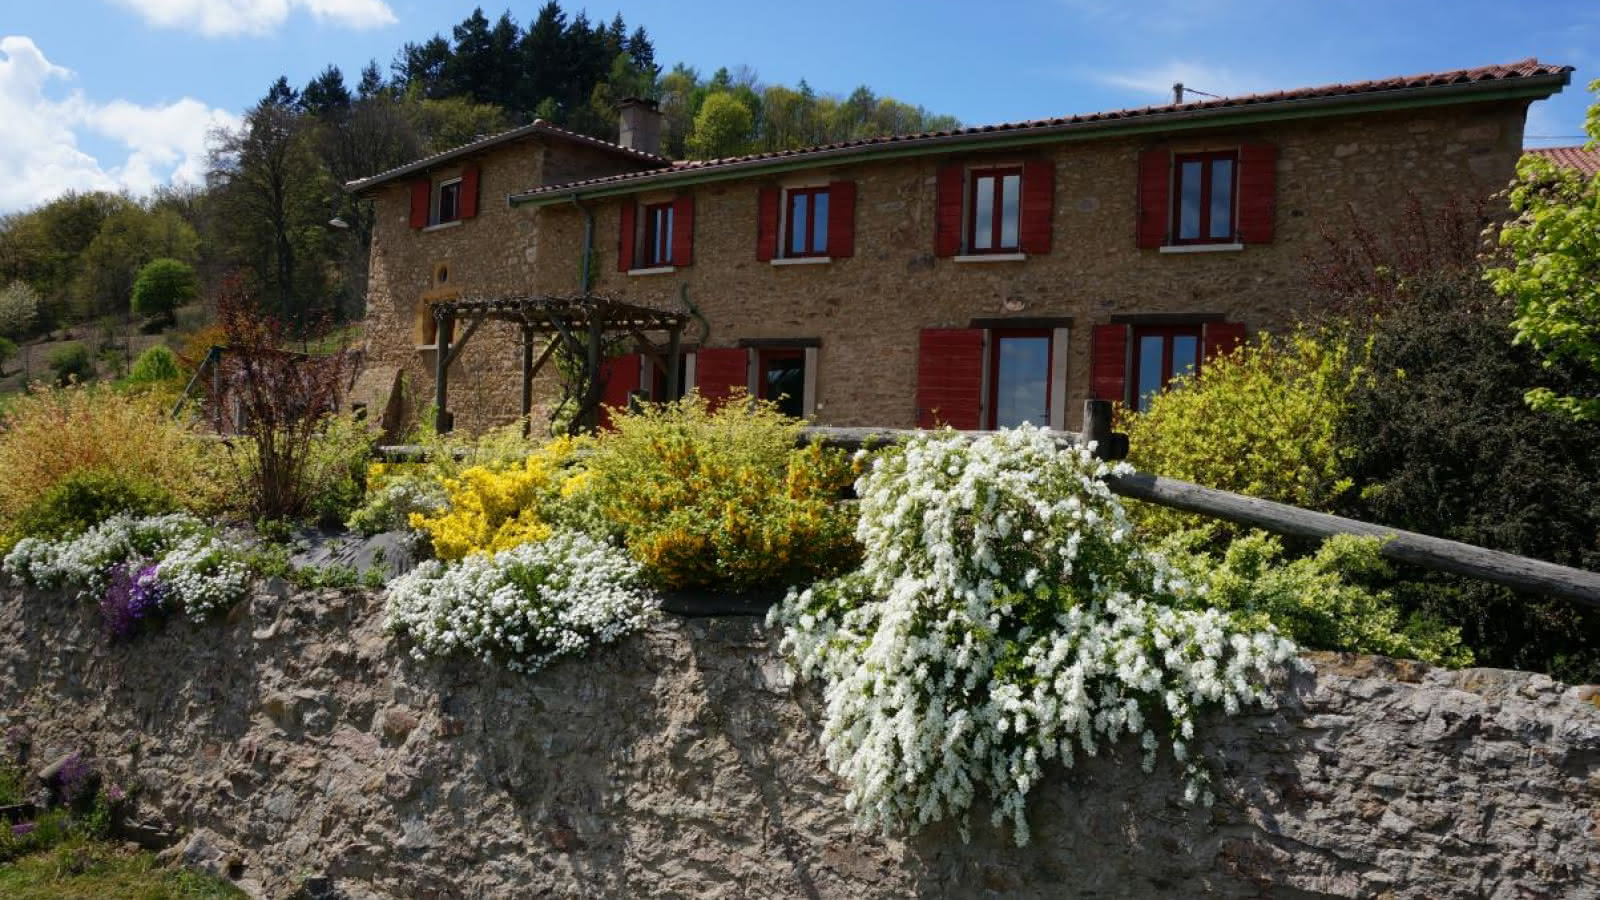 Chambres d'hôtes de 'La Ferme du Thiollet' à MONTROMANT (Rhône-Monts du Lyonnais).